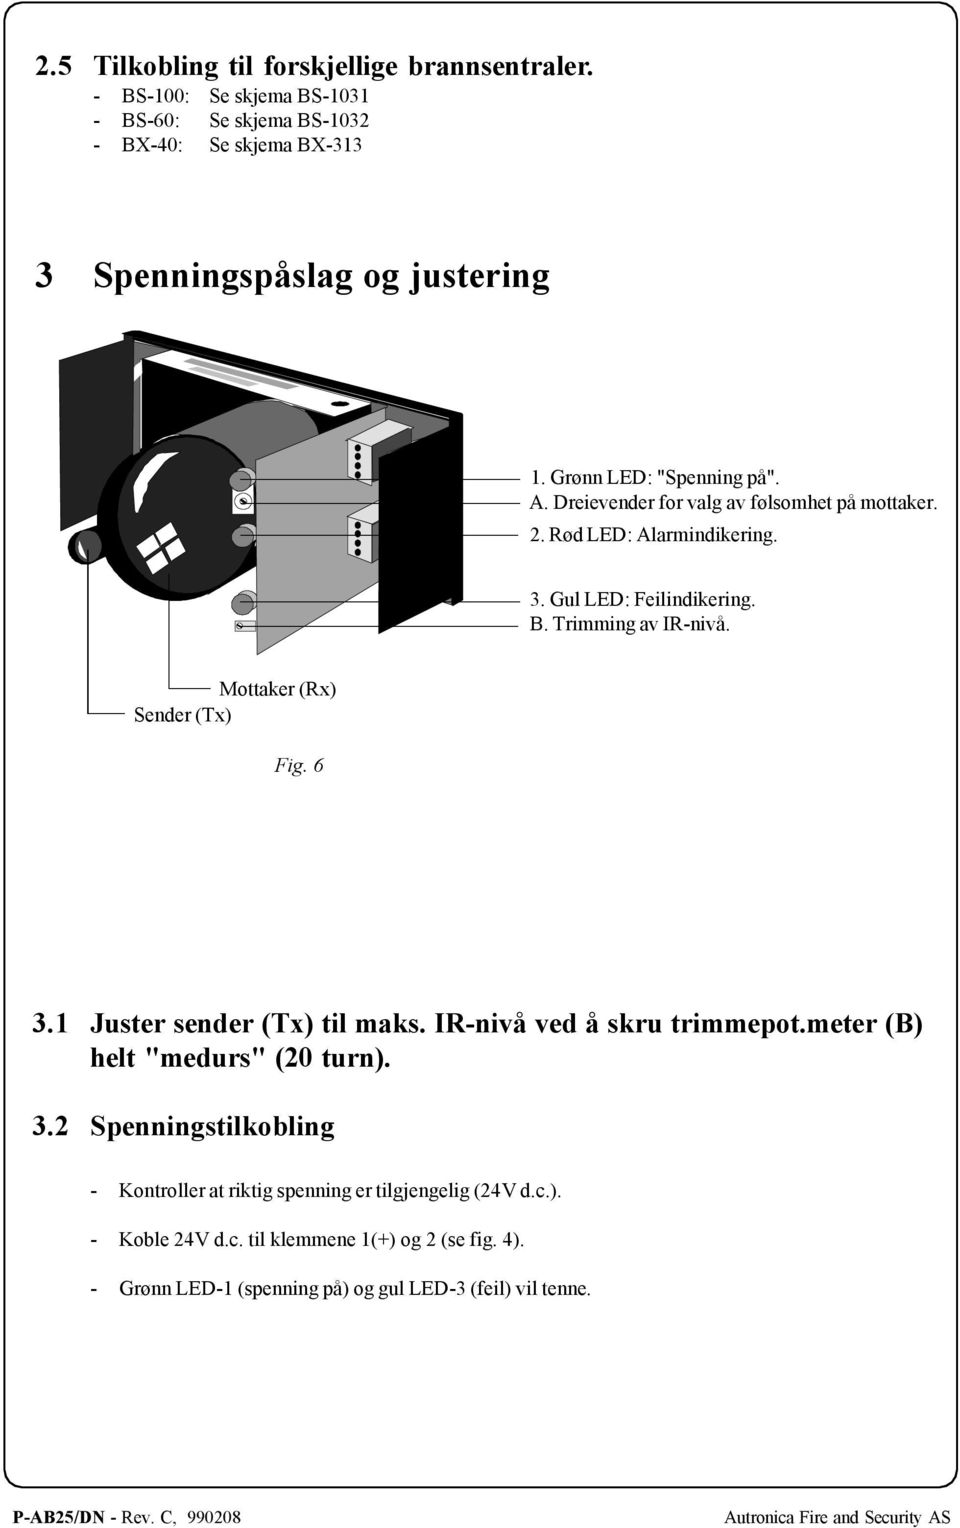 Mottaker (Rx) Sender (Tx) Fig. 6 3.1 Juster sender (Tx) til maks. IR-nivå ved å skru trimmepot.meter (B) helt "medurs" (20 turn). 3.2 Spenningstilkobling - Kontroller at riktig spenning er tilgjengelig (24V d.